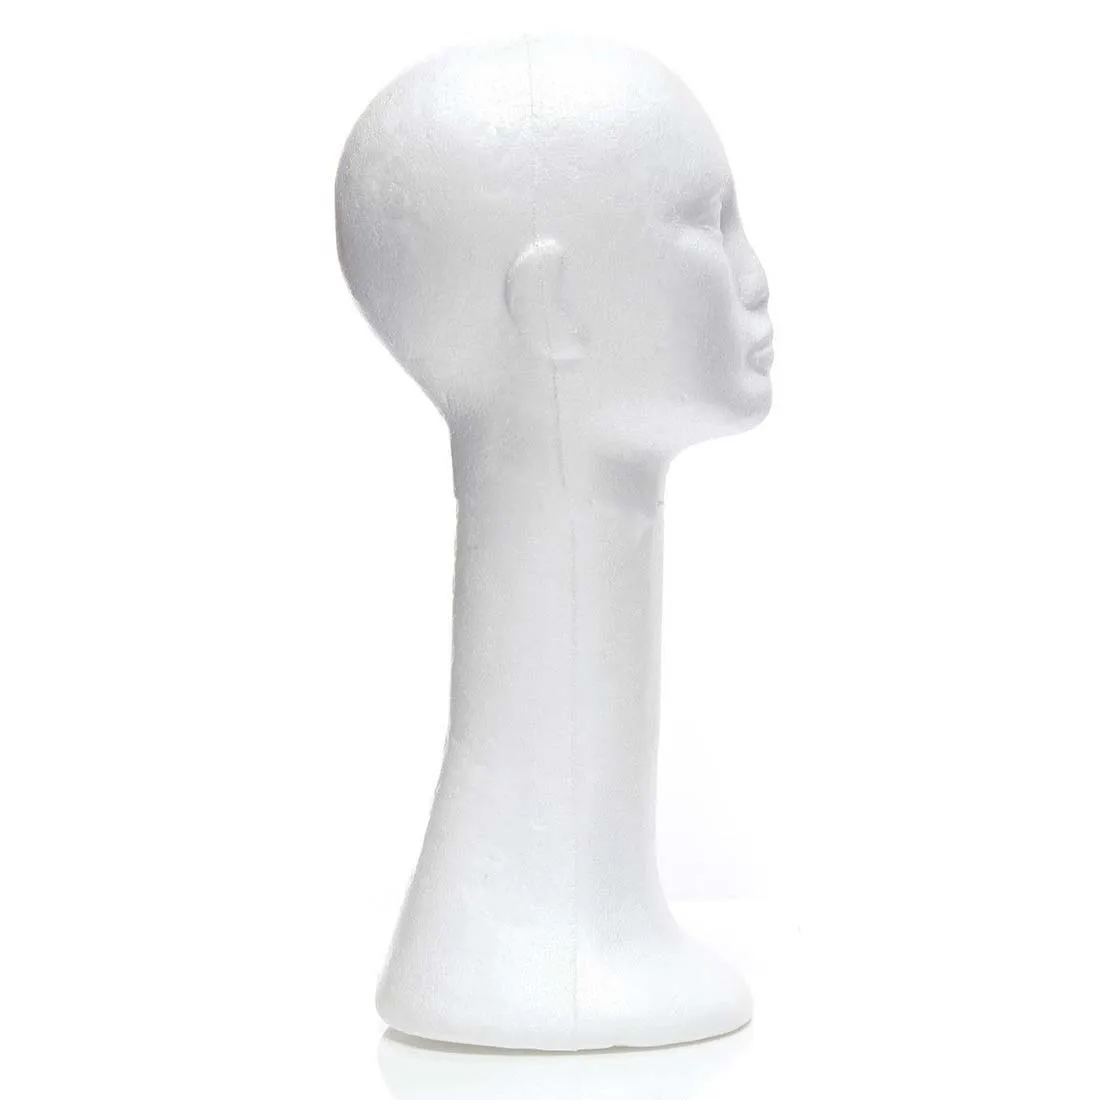 Горячая длинная шея женская модель головы пены очки волос парик Манекен шляпа стенд пенопласт